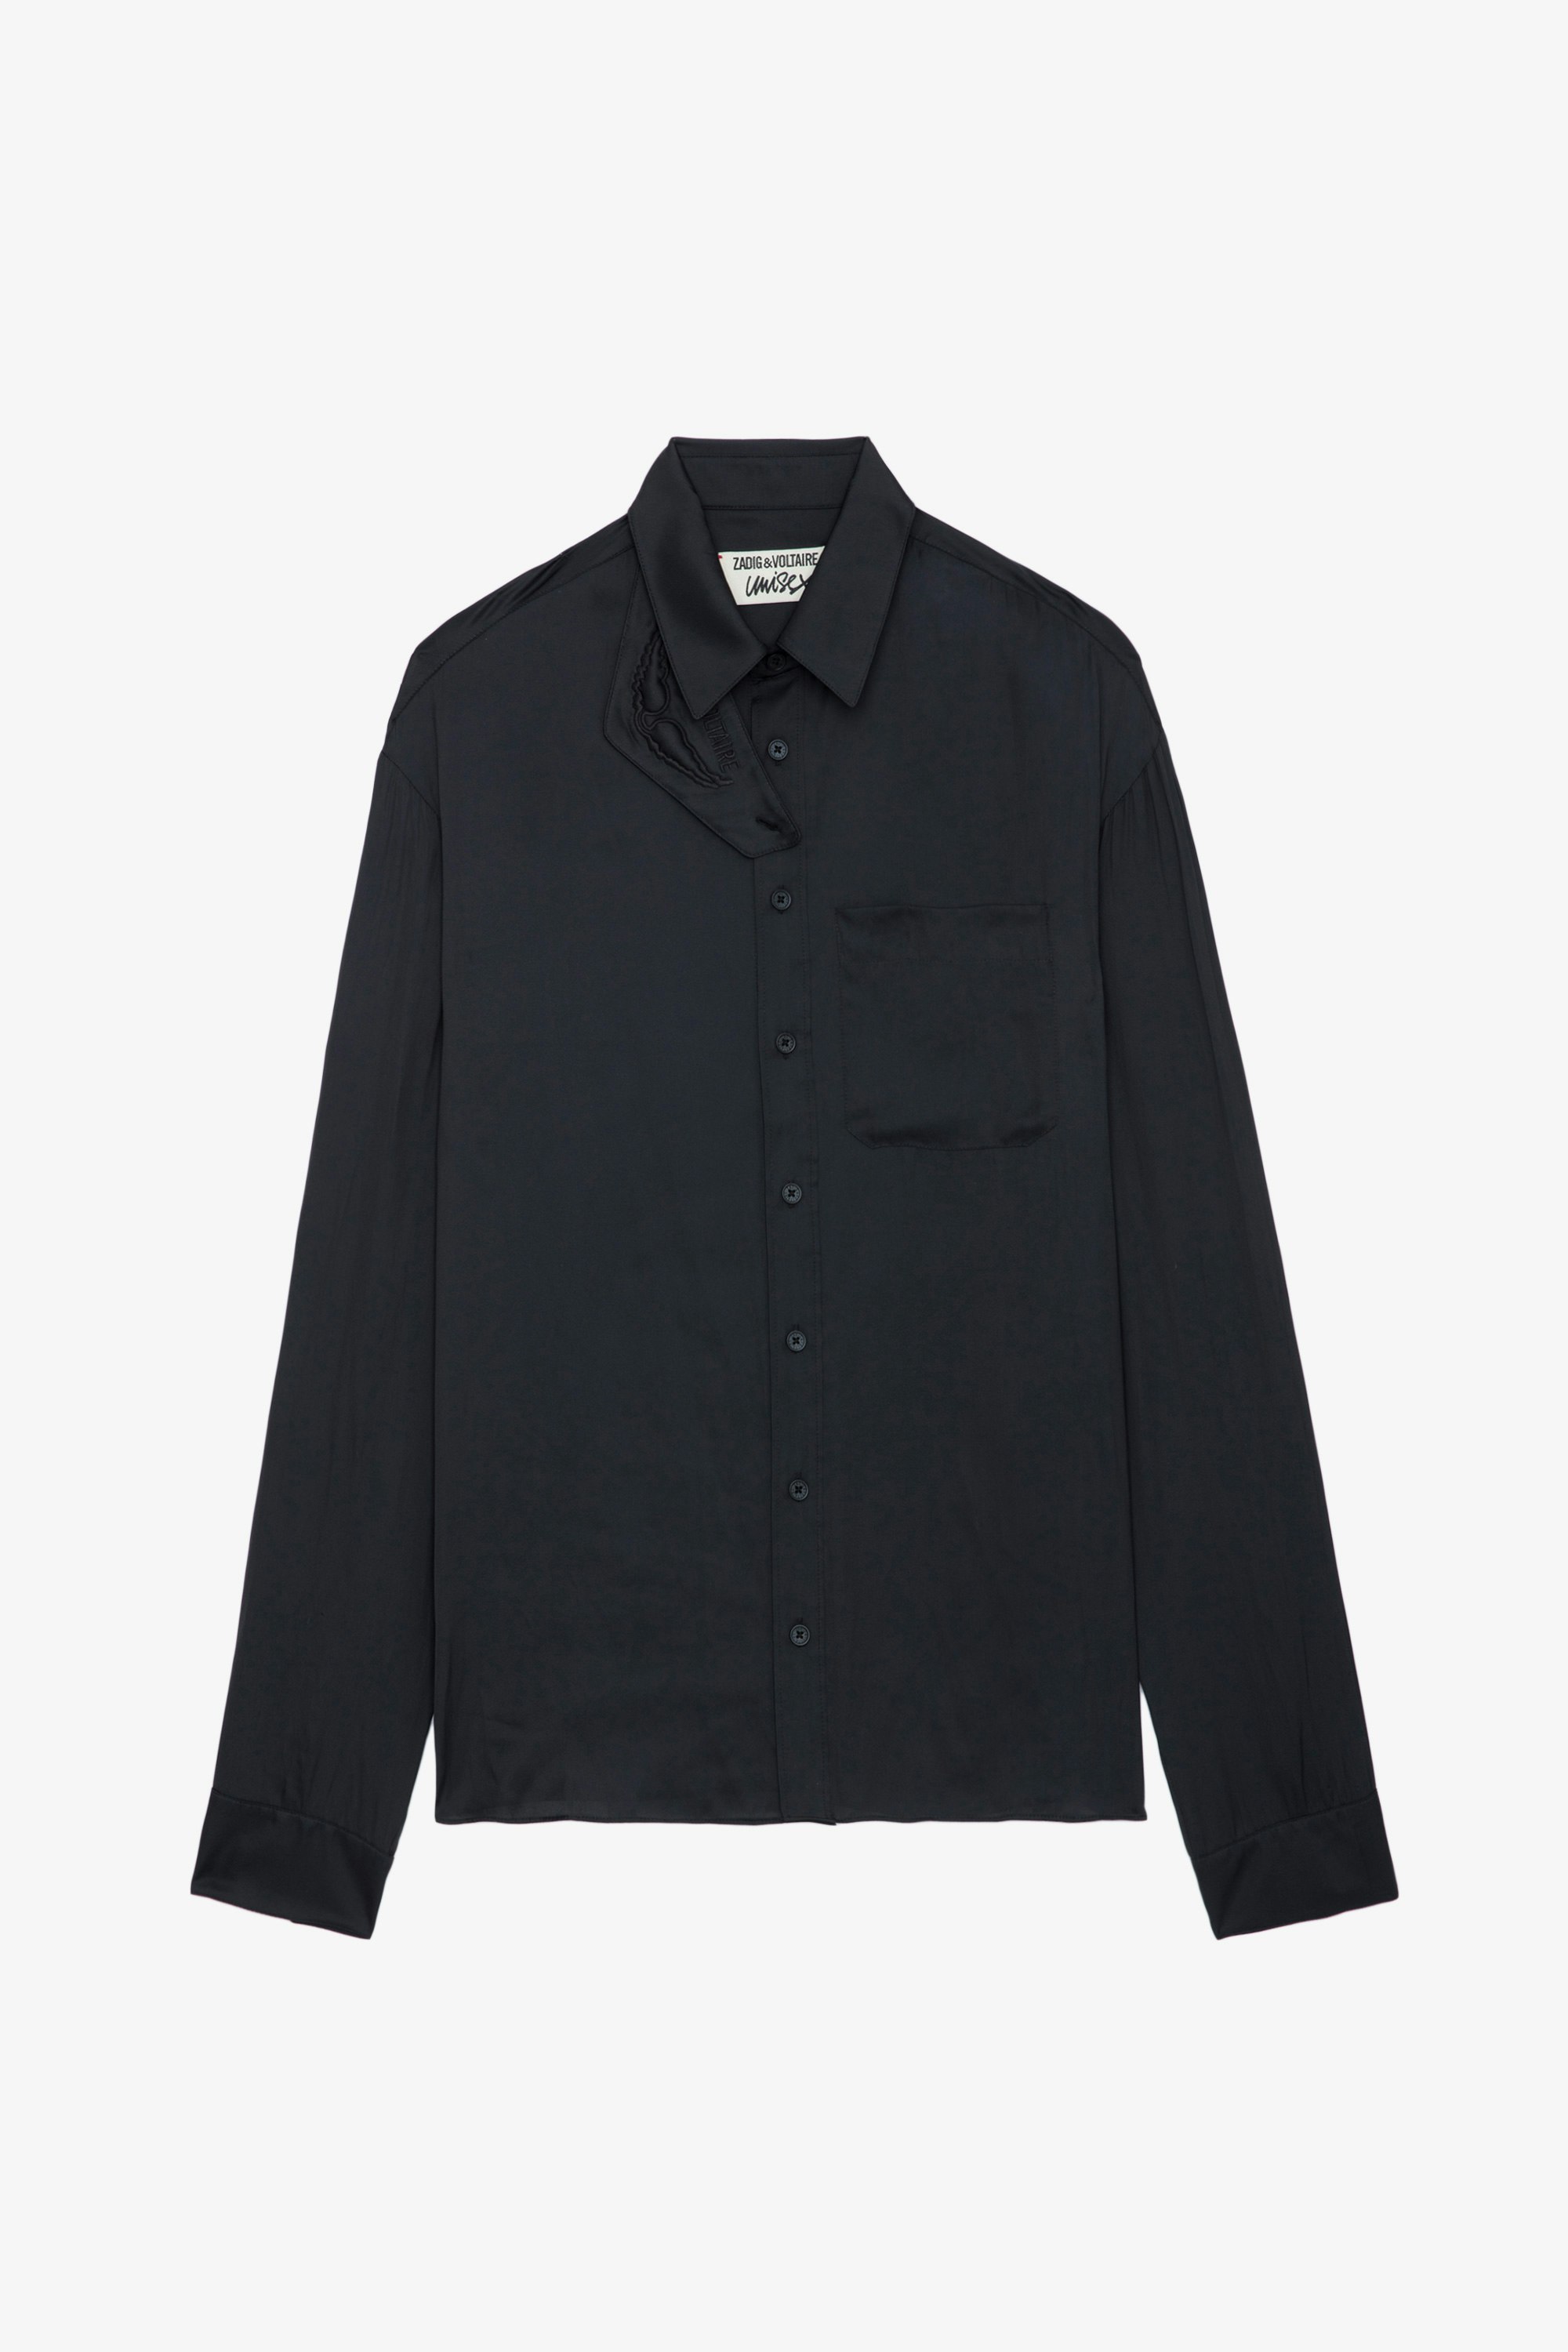 Camicia Tyron Raso - Camicia in raso nero con chiusura a bottoni, tasca e collo con protezione removibile.